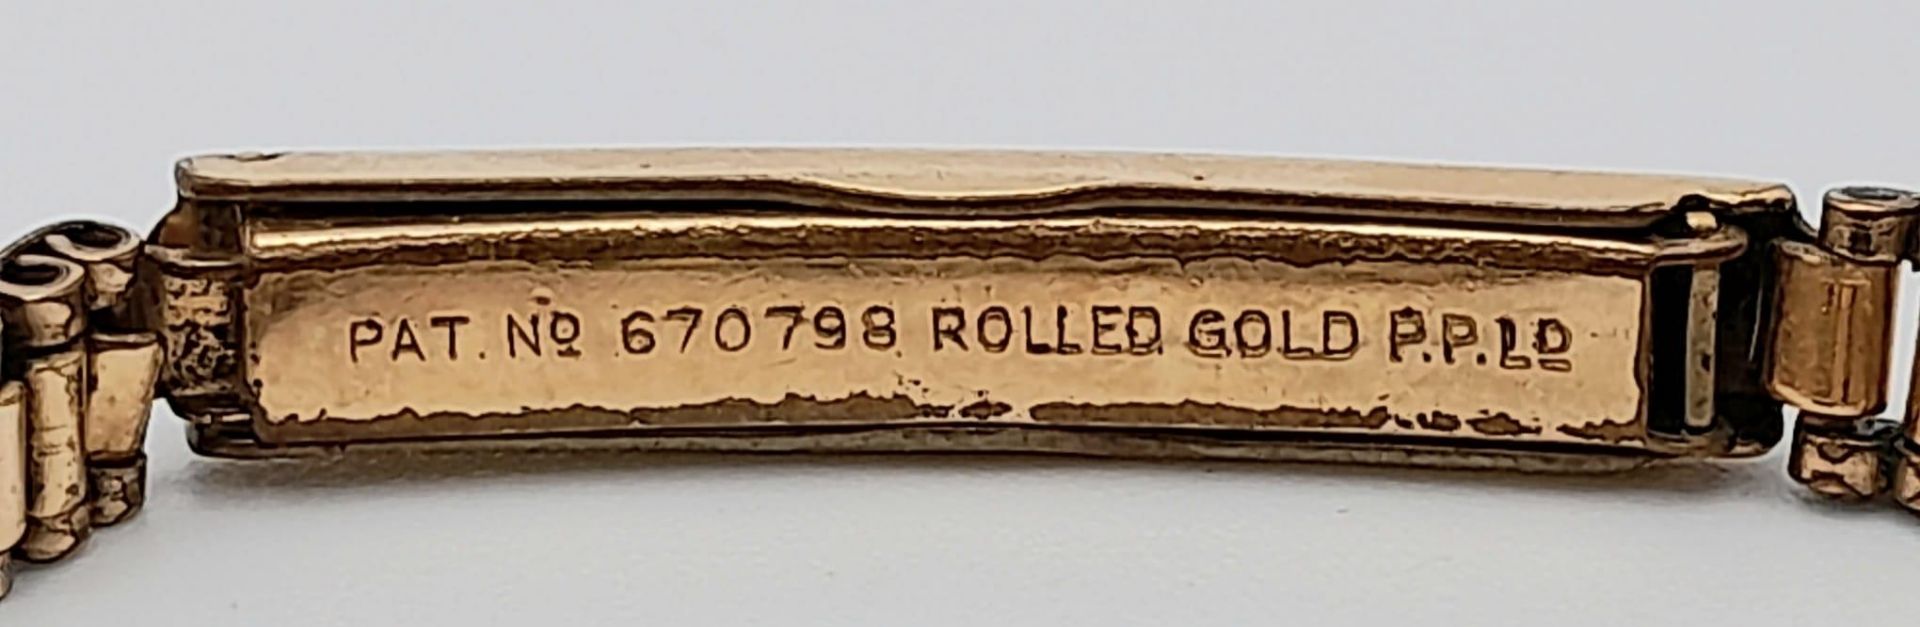 A Vintage 18K Gold Cased Mudo Ladies Watch. Rolled gold bracelet. 18k gold case. Mechanical - Image 4 of 6